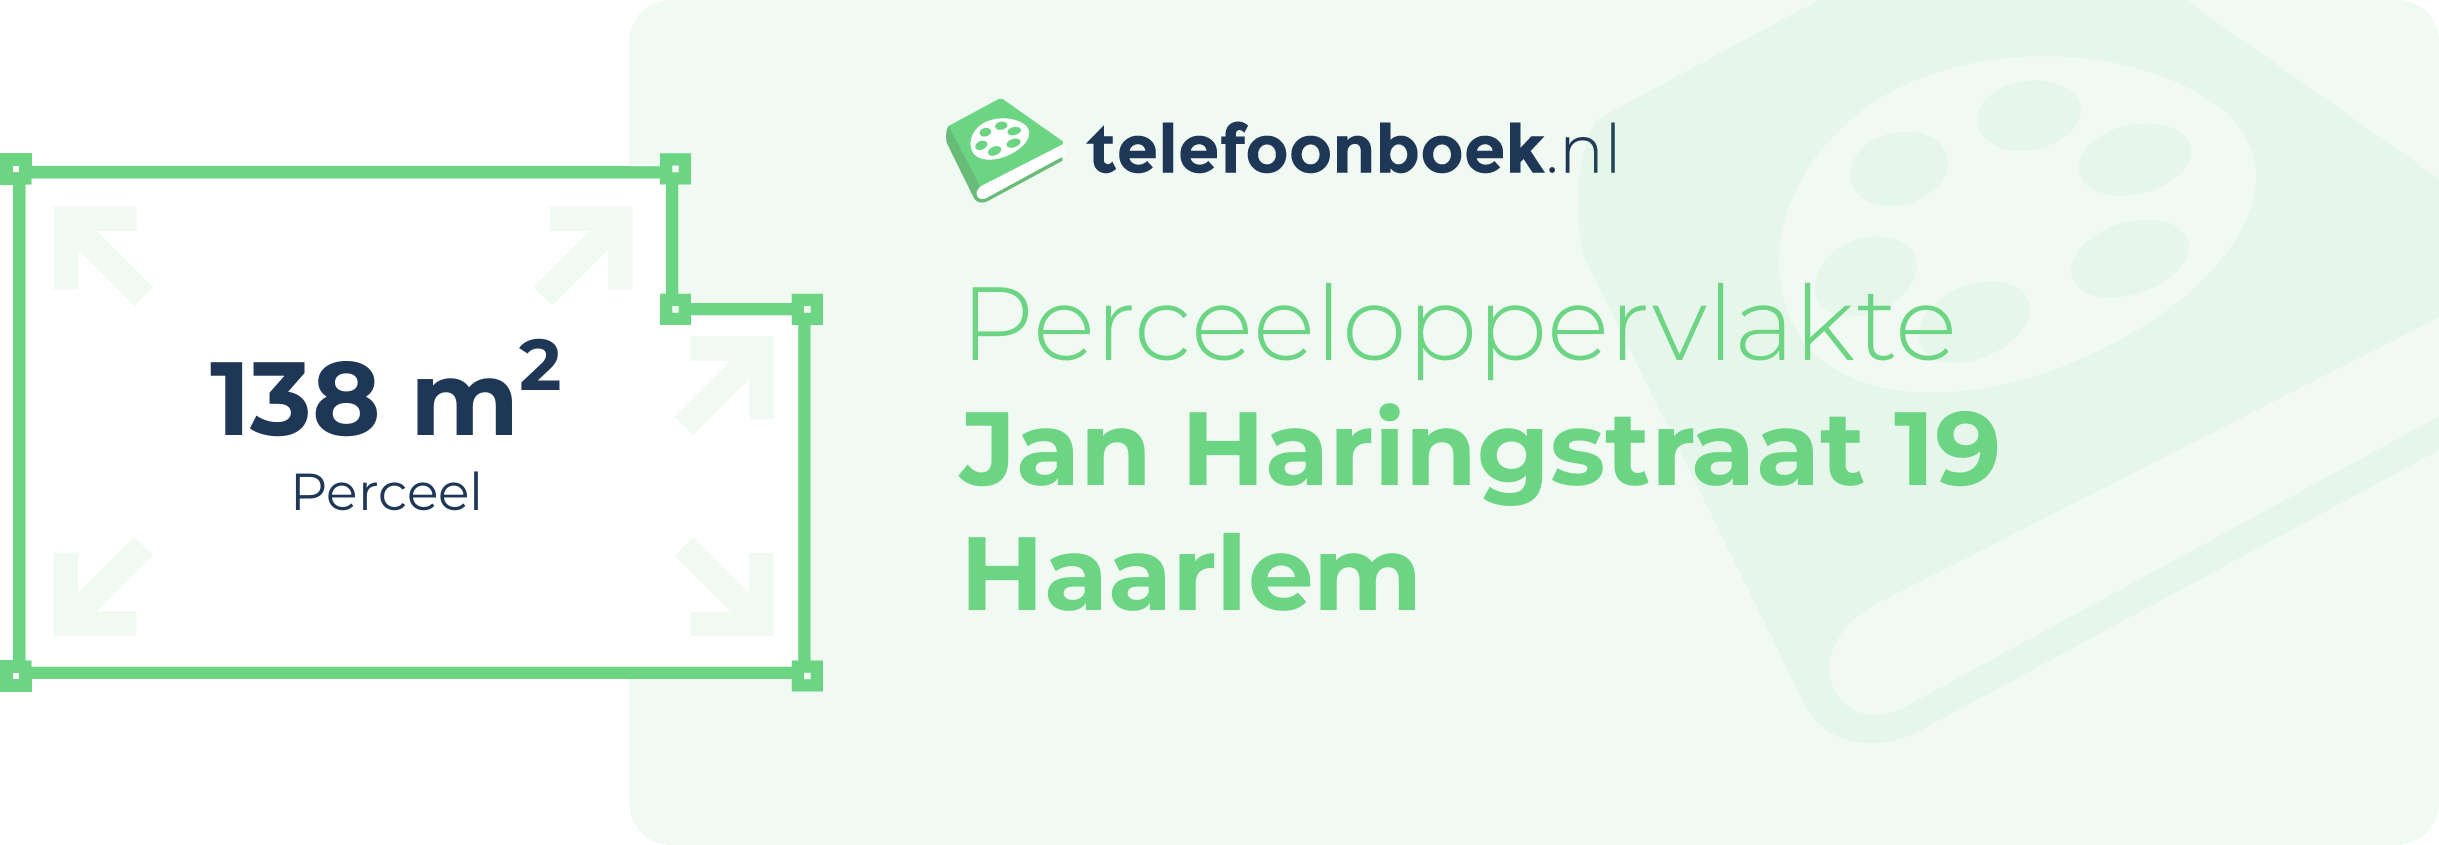 Perceeloppervlakte Jan Haringstraat 19 Haarlem